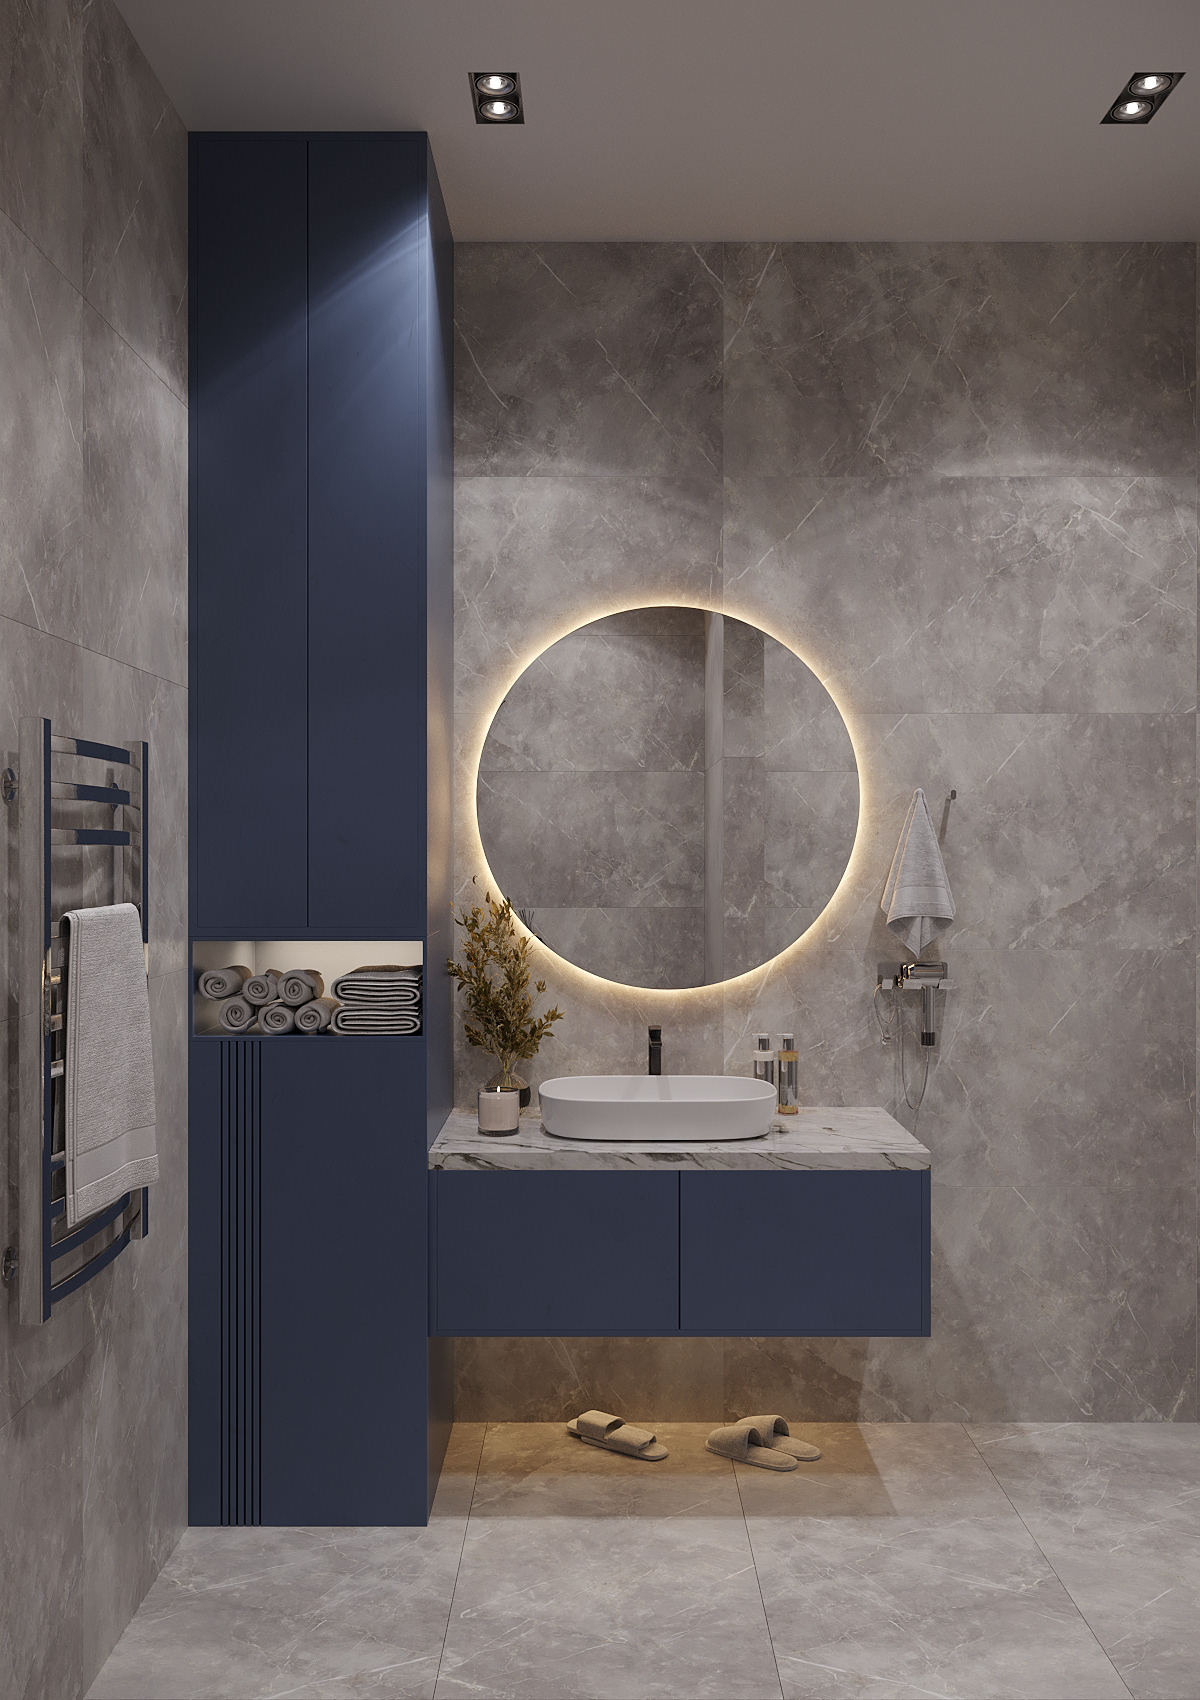 architecture interior design  3ds max Render Interior visualization design bathroom design bathroom